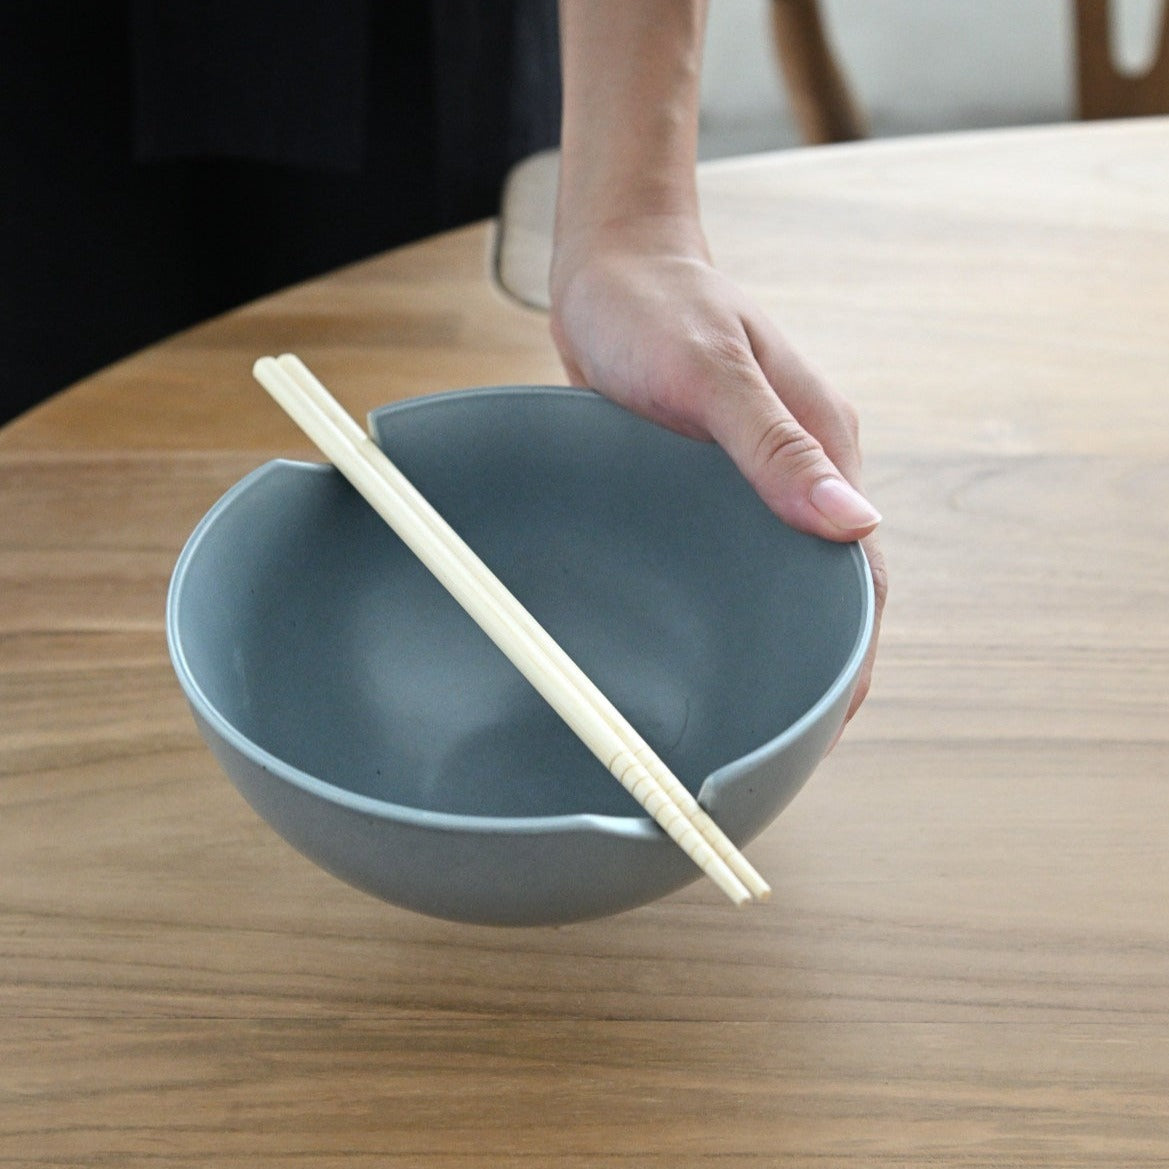 Ikana Iron Bowl With Chopsticks